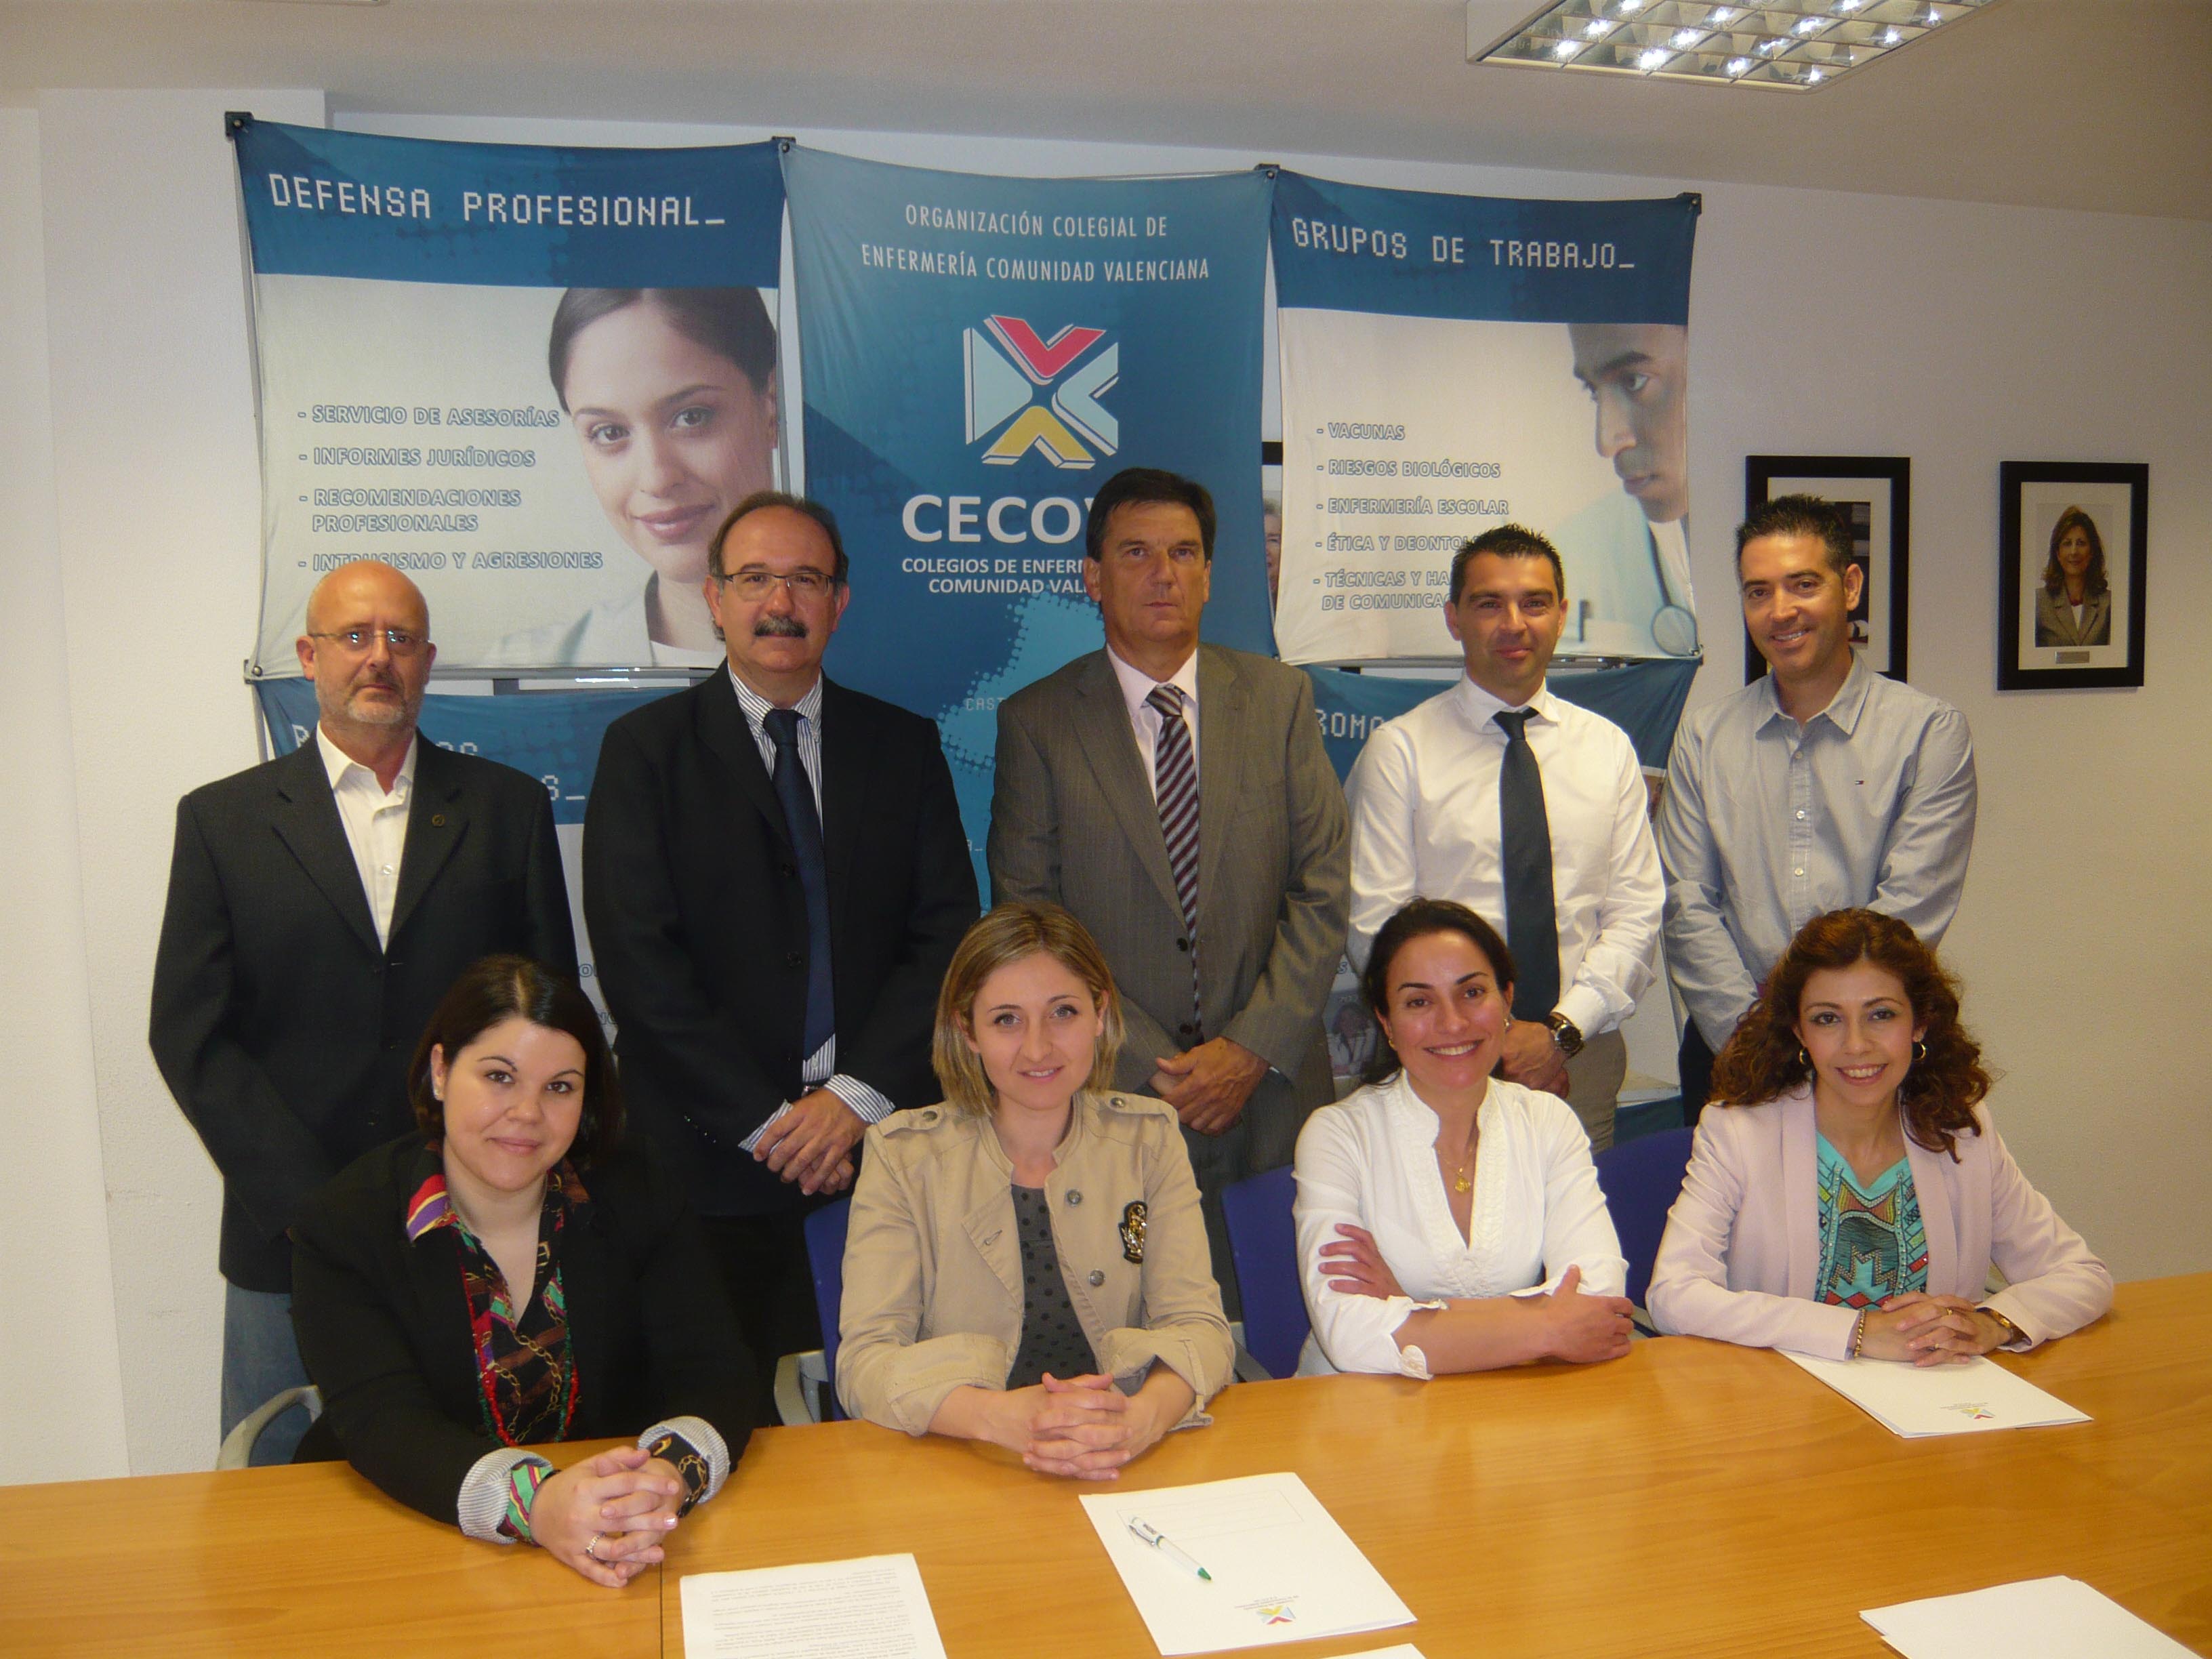 Convenio de colaboración CECOVA - Hospital de Torrevieja (Alicante)